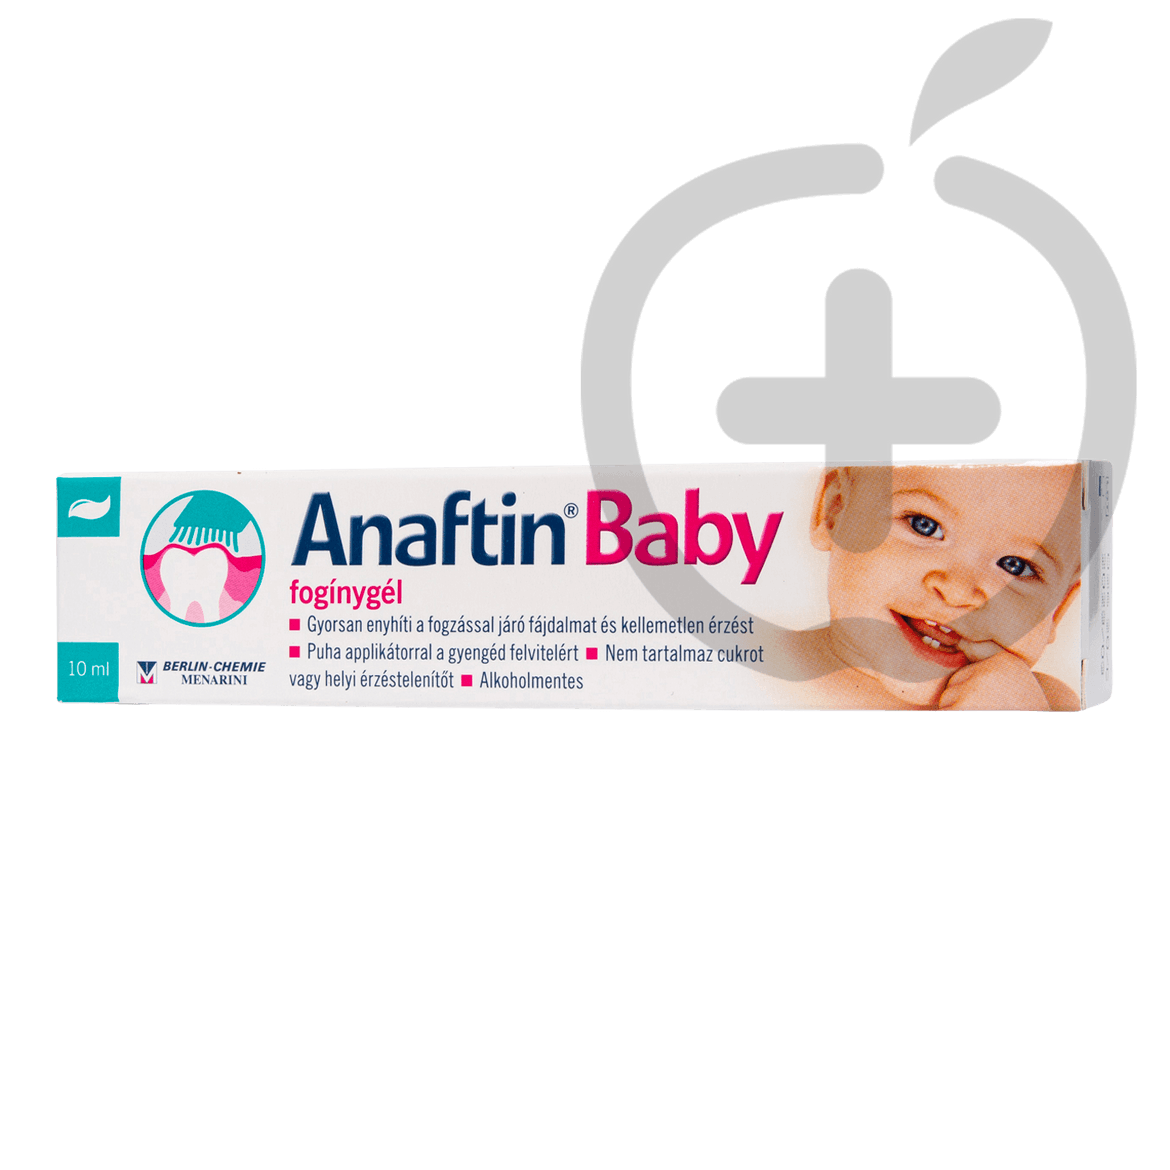 Anaftin Baby fogínygél